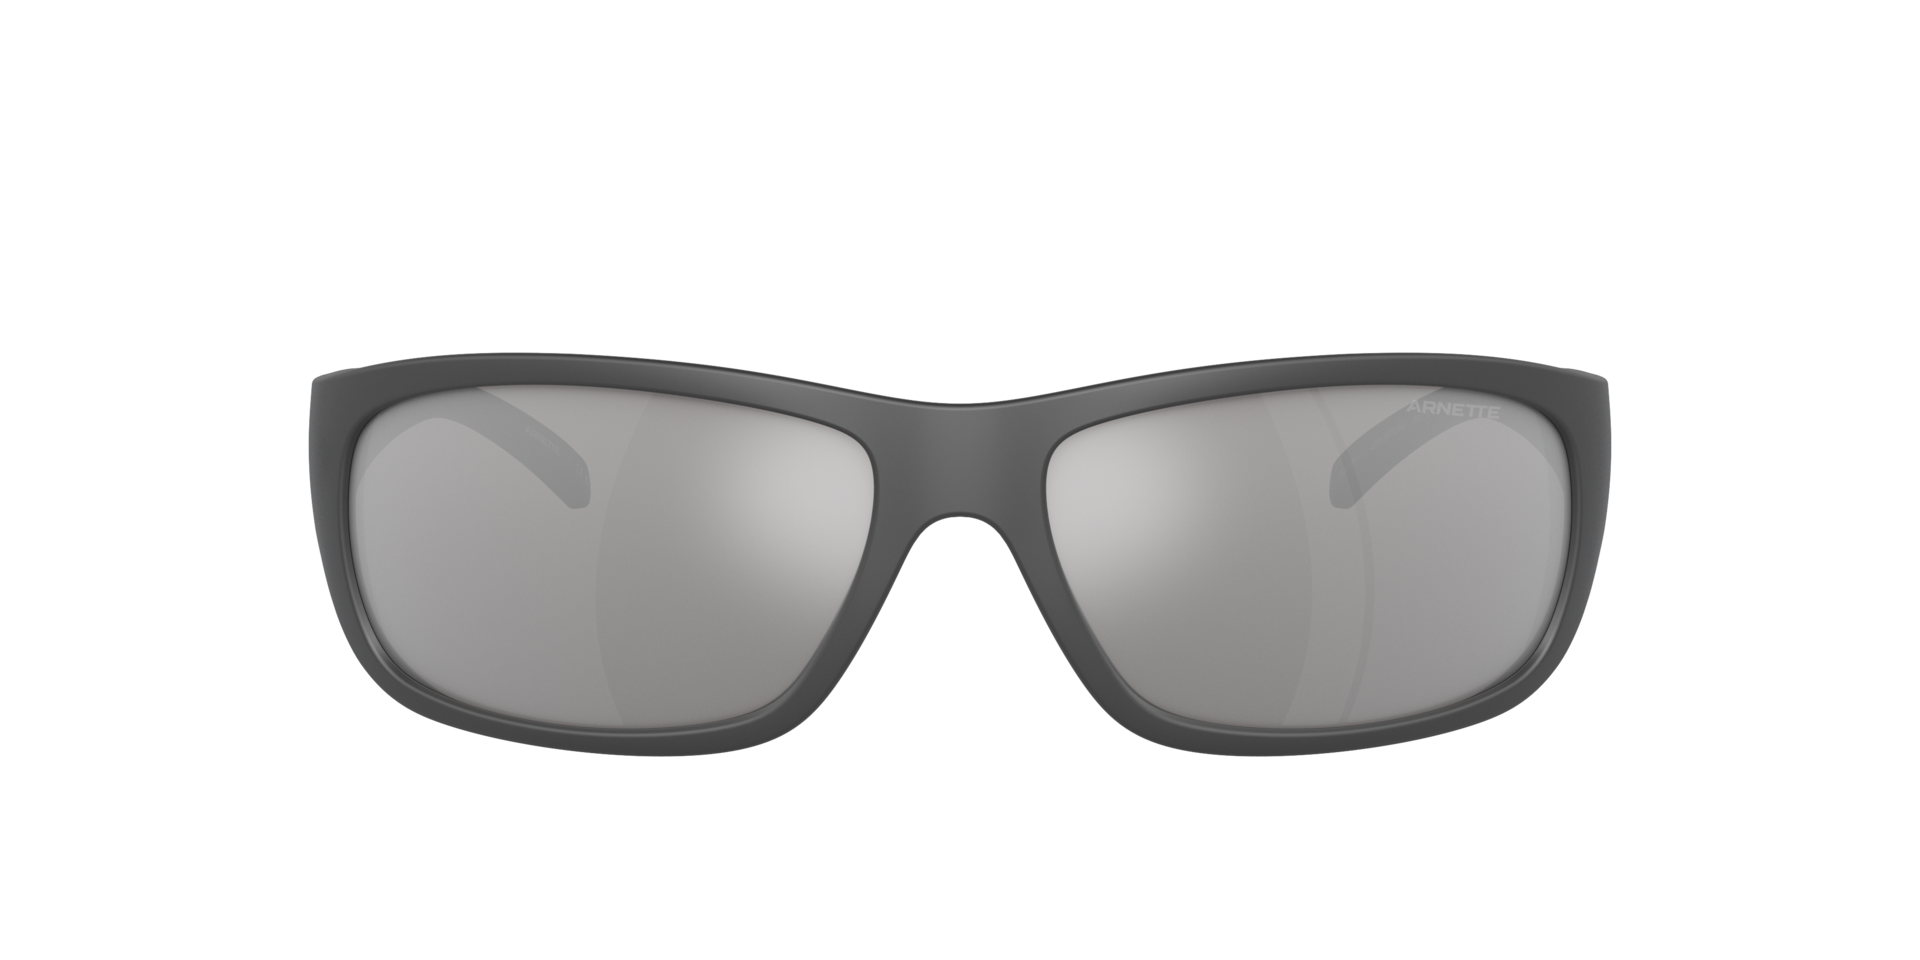 Das Bild zeigt die Sonnenbrille AN4290 28706G von der Marke Arnette in Schwarz.